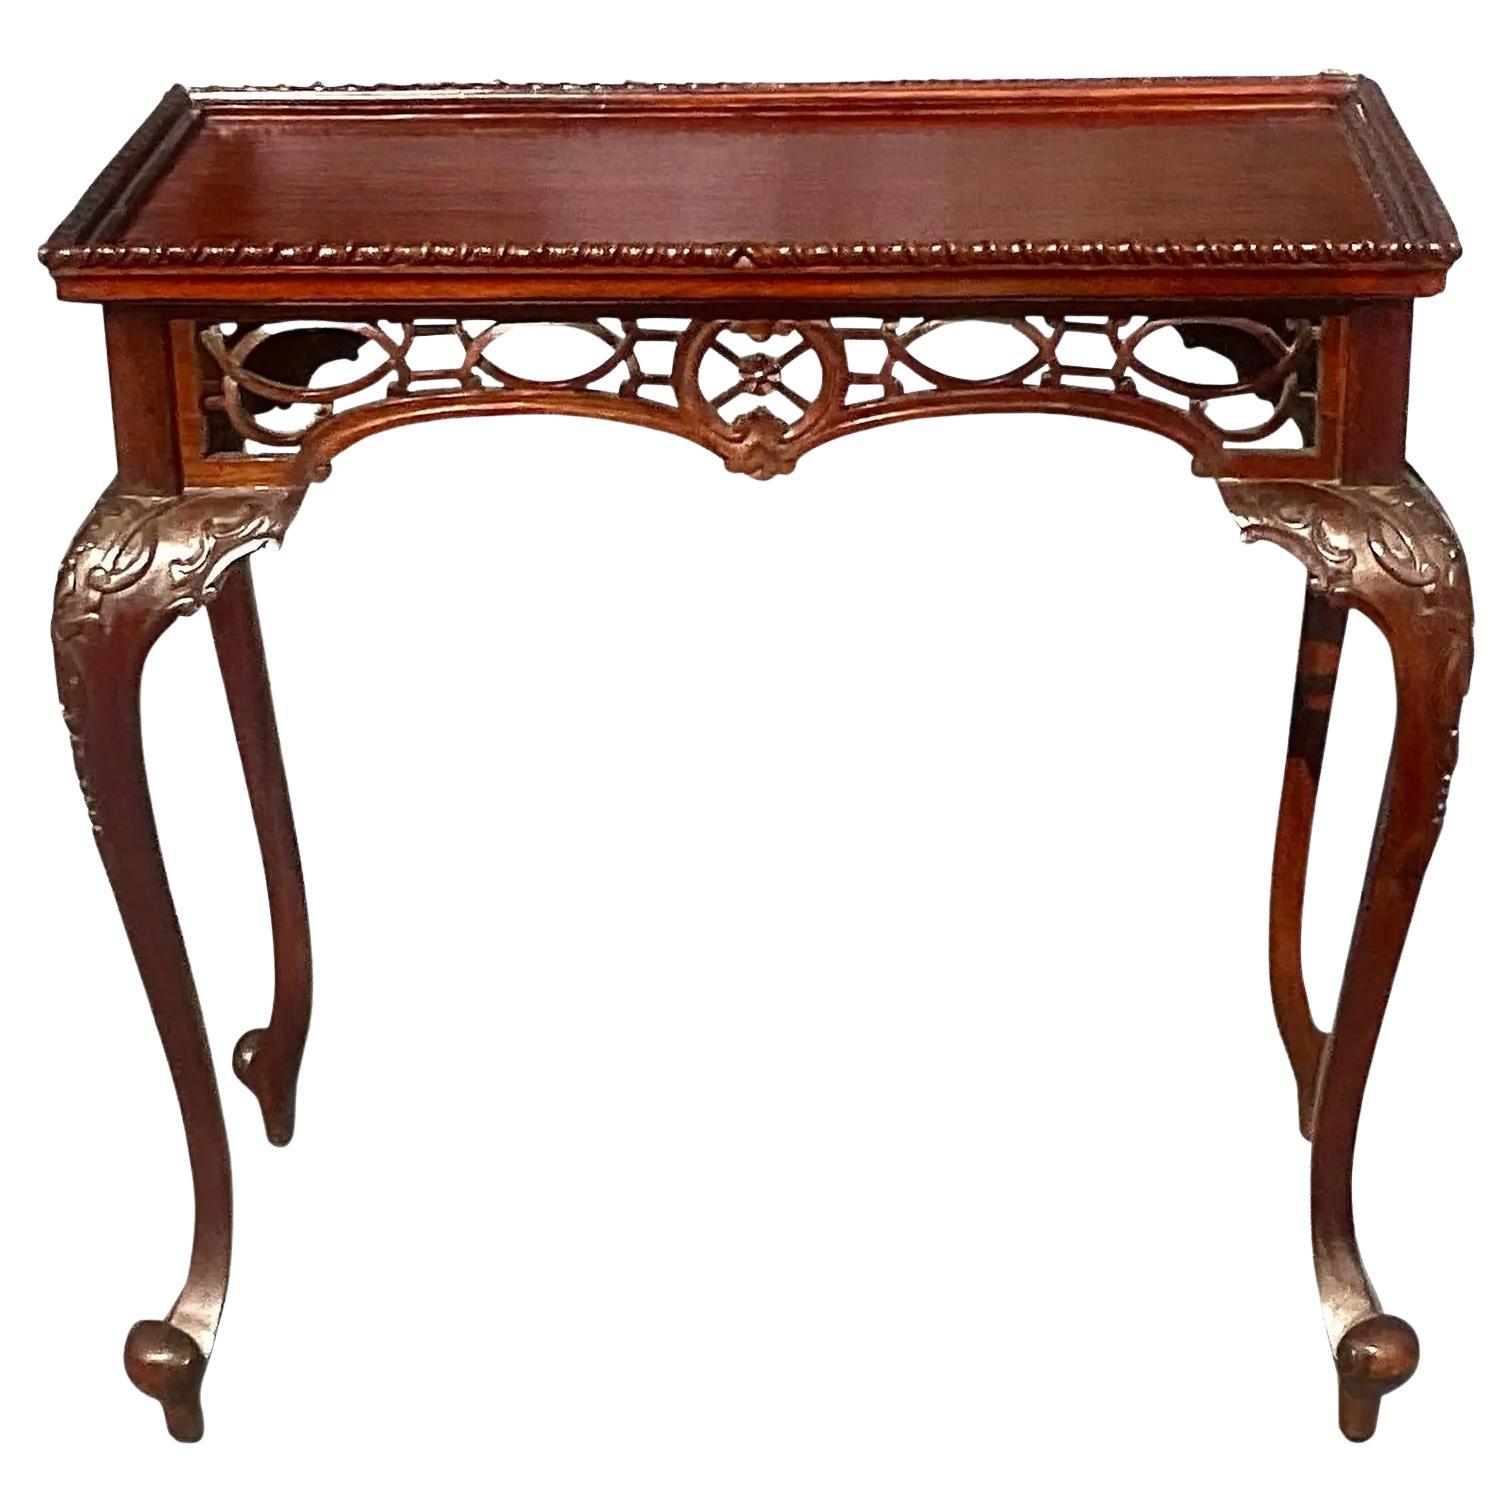 Vintage Regency Carved Fretwork Tea Table